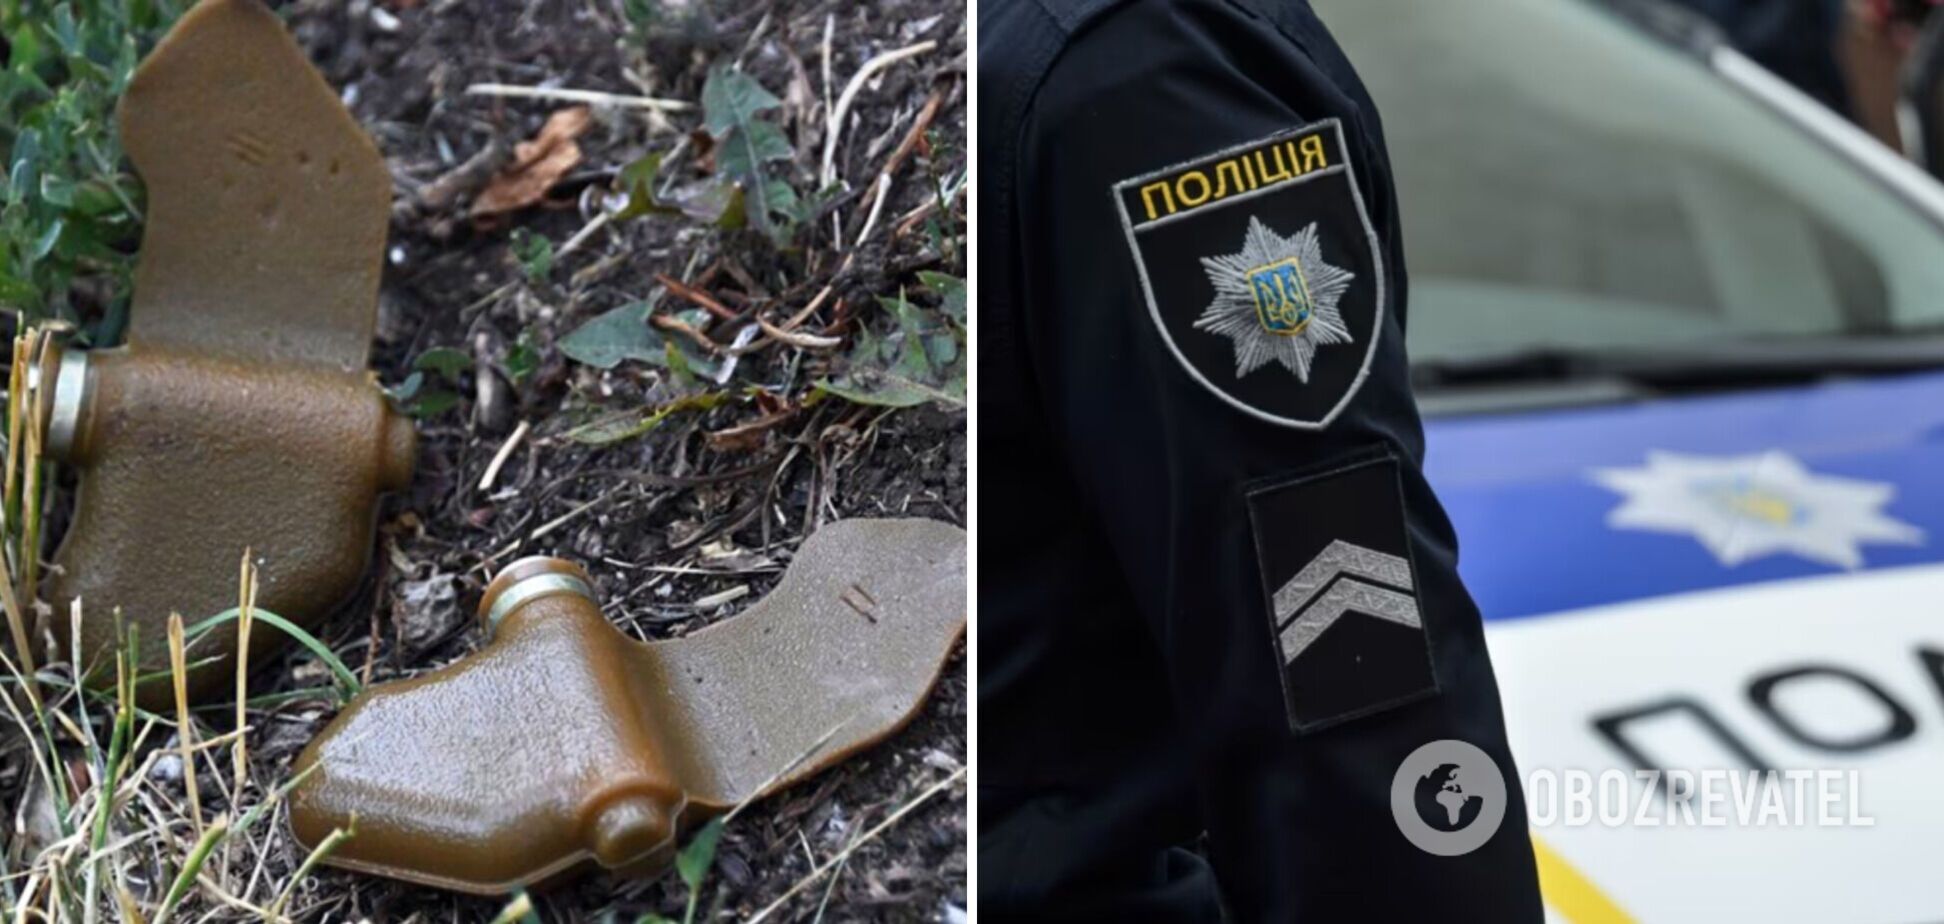 В Сумской области погиб подросток, нашедший взрывчатку во дворе: детали трагедии